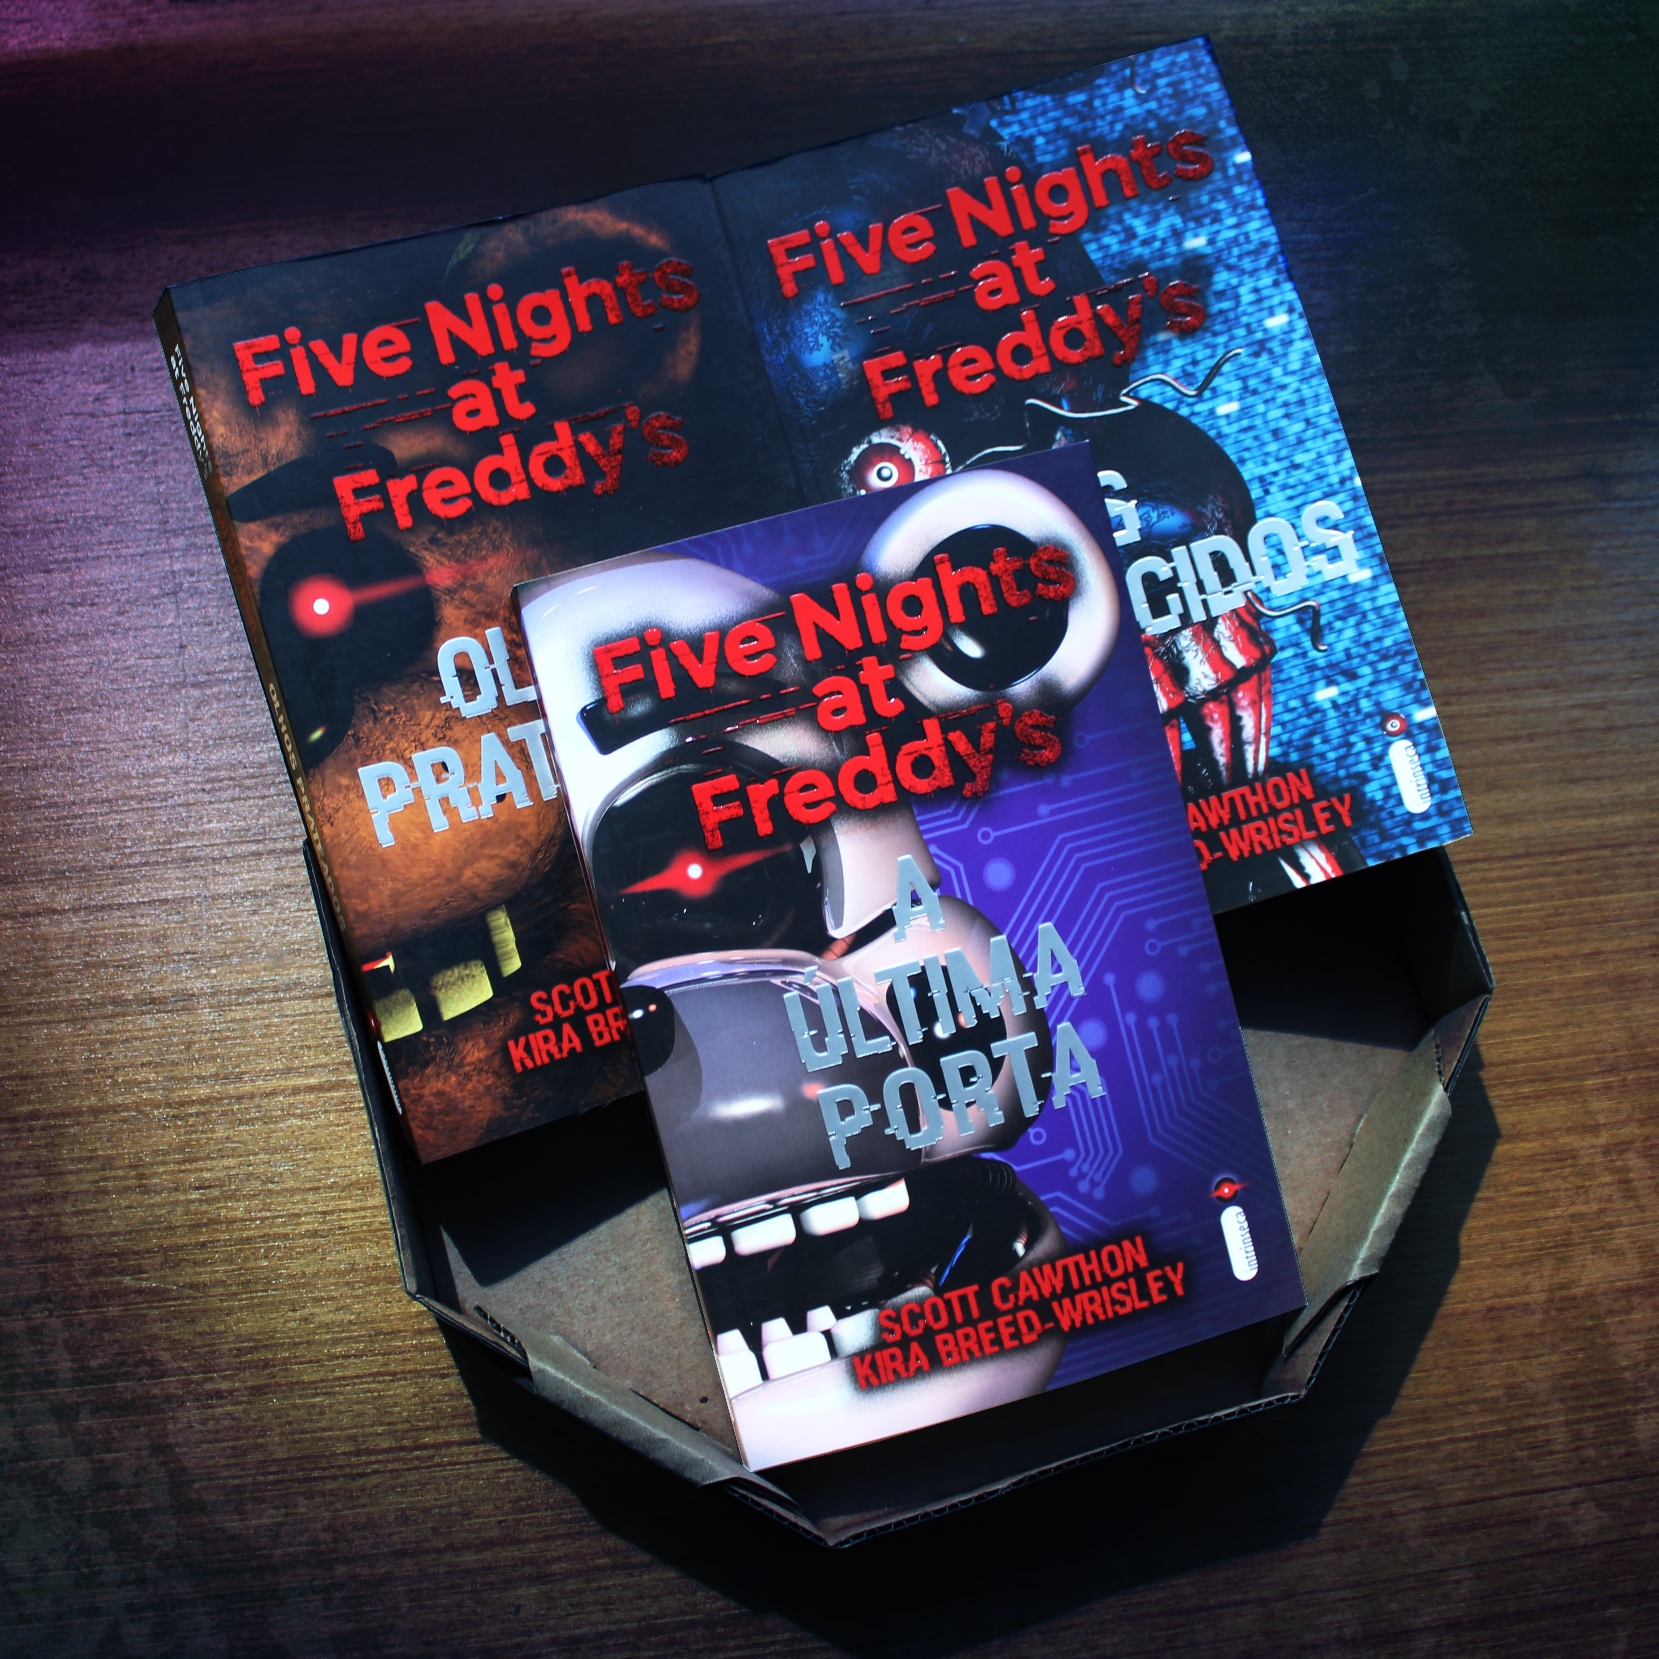 Livros De Terror Five Nights At Freddys Os Distorcidos Fnaf